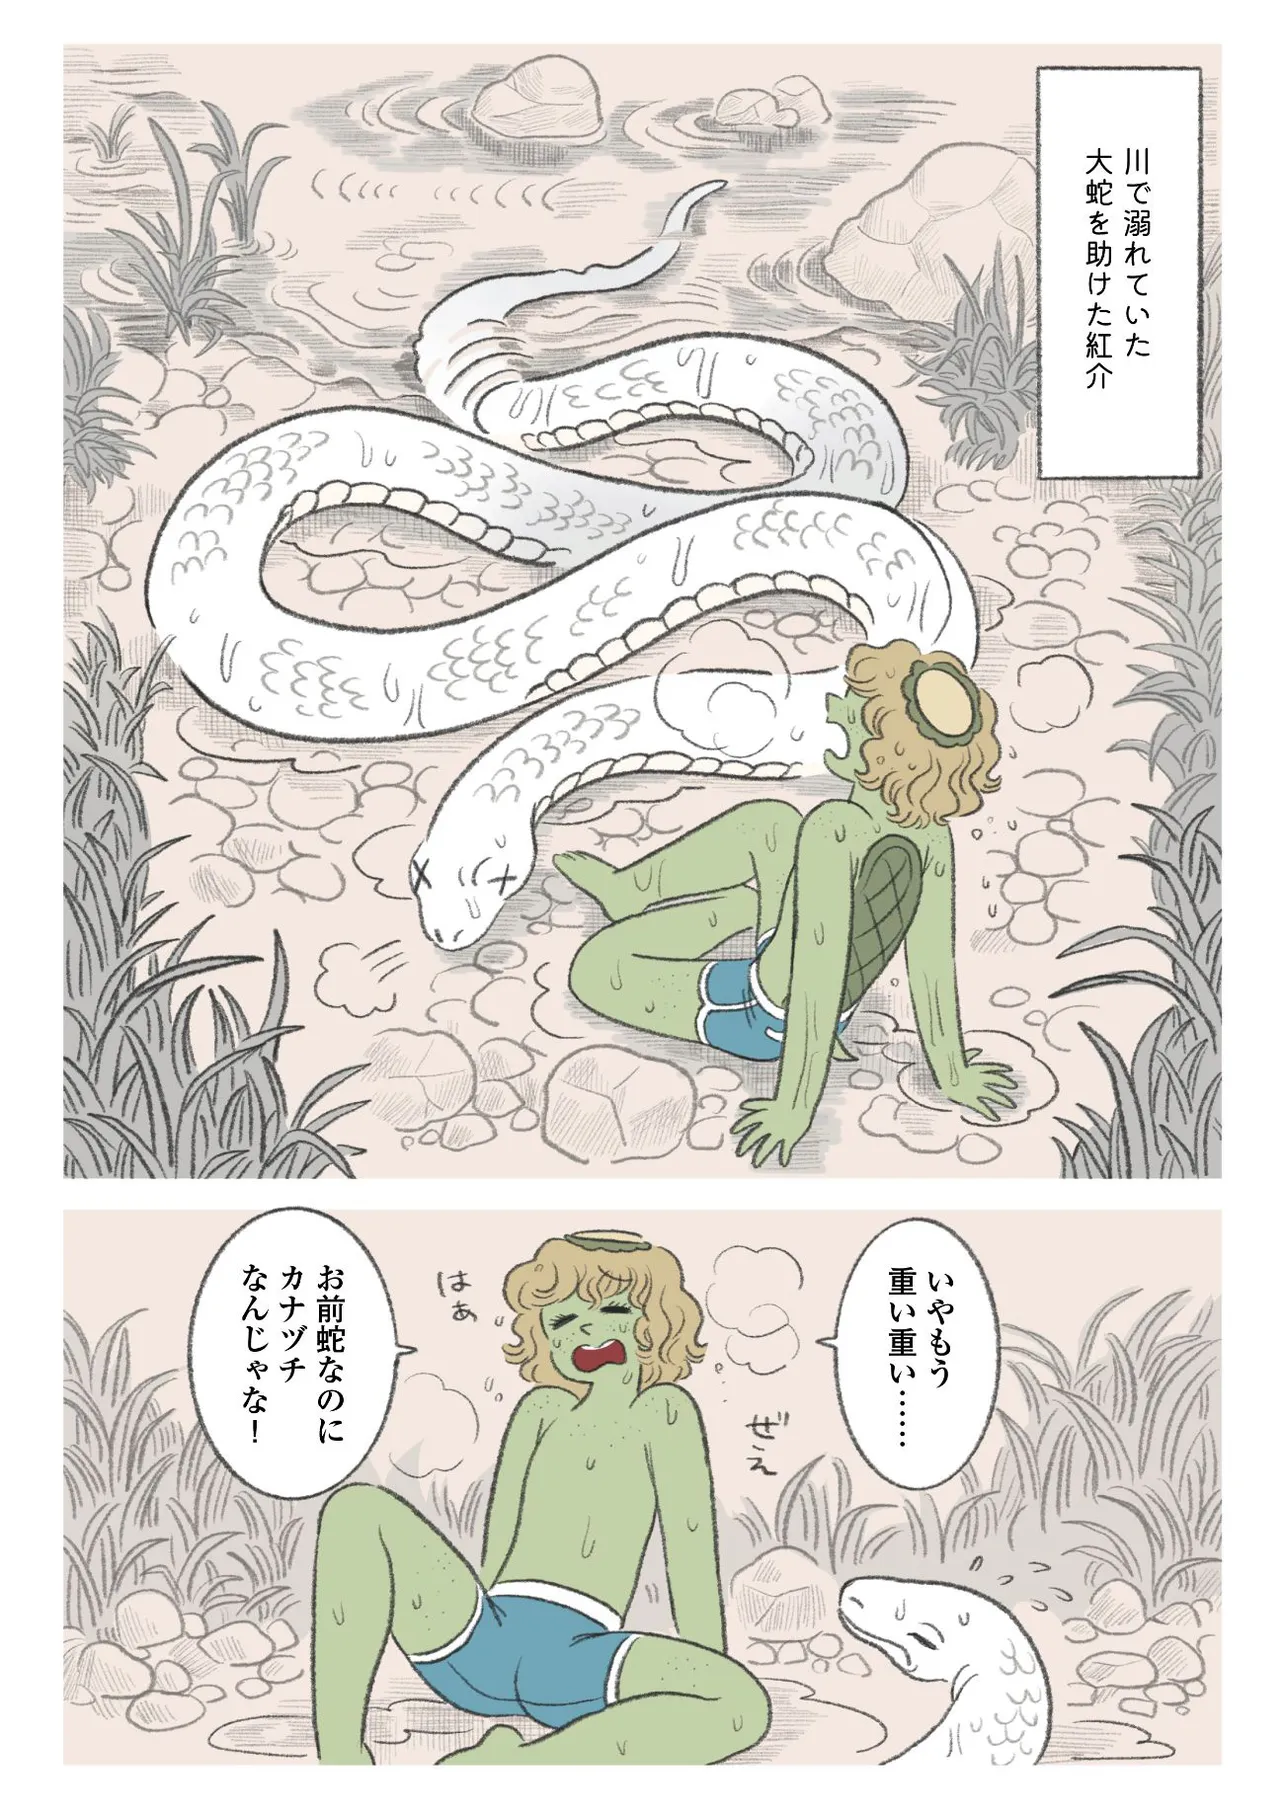 『カッパの少年が蛇を助ける話』(1／5) 